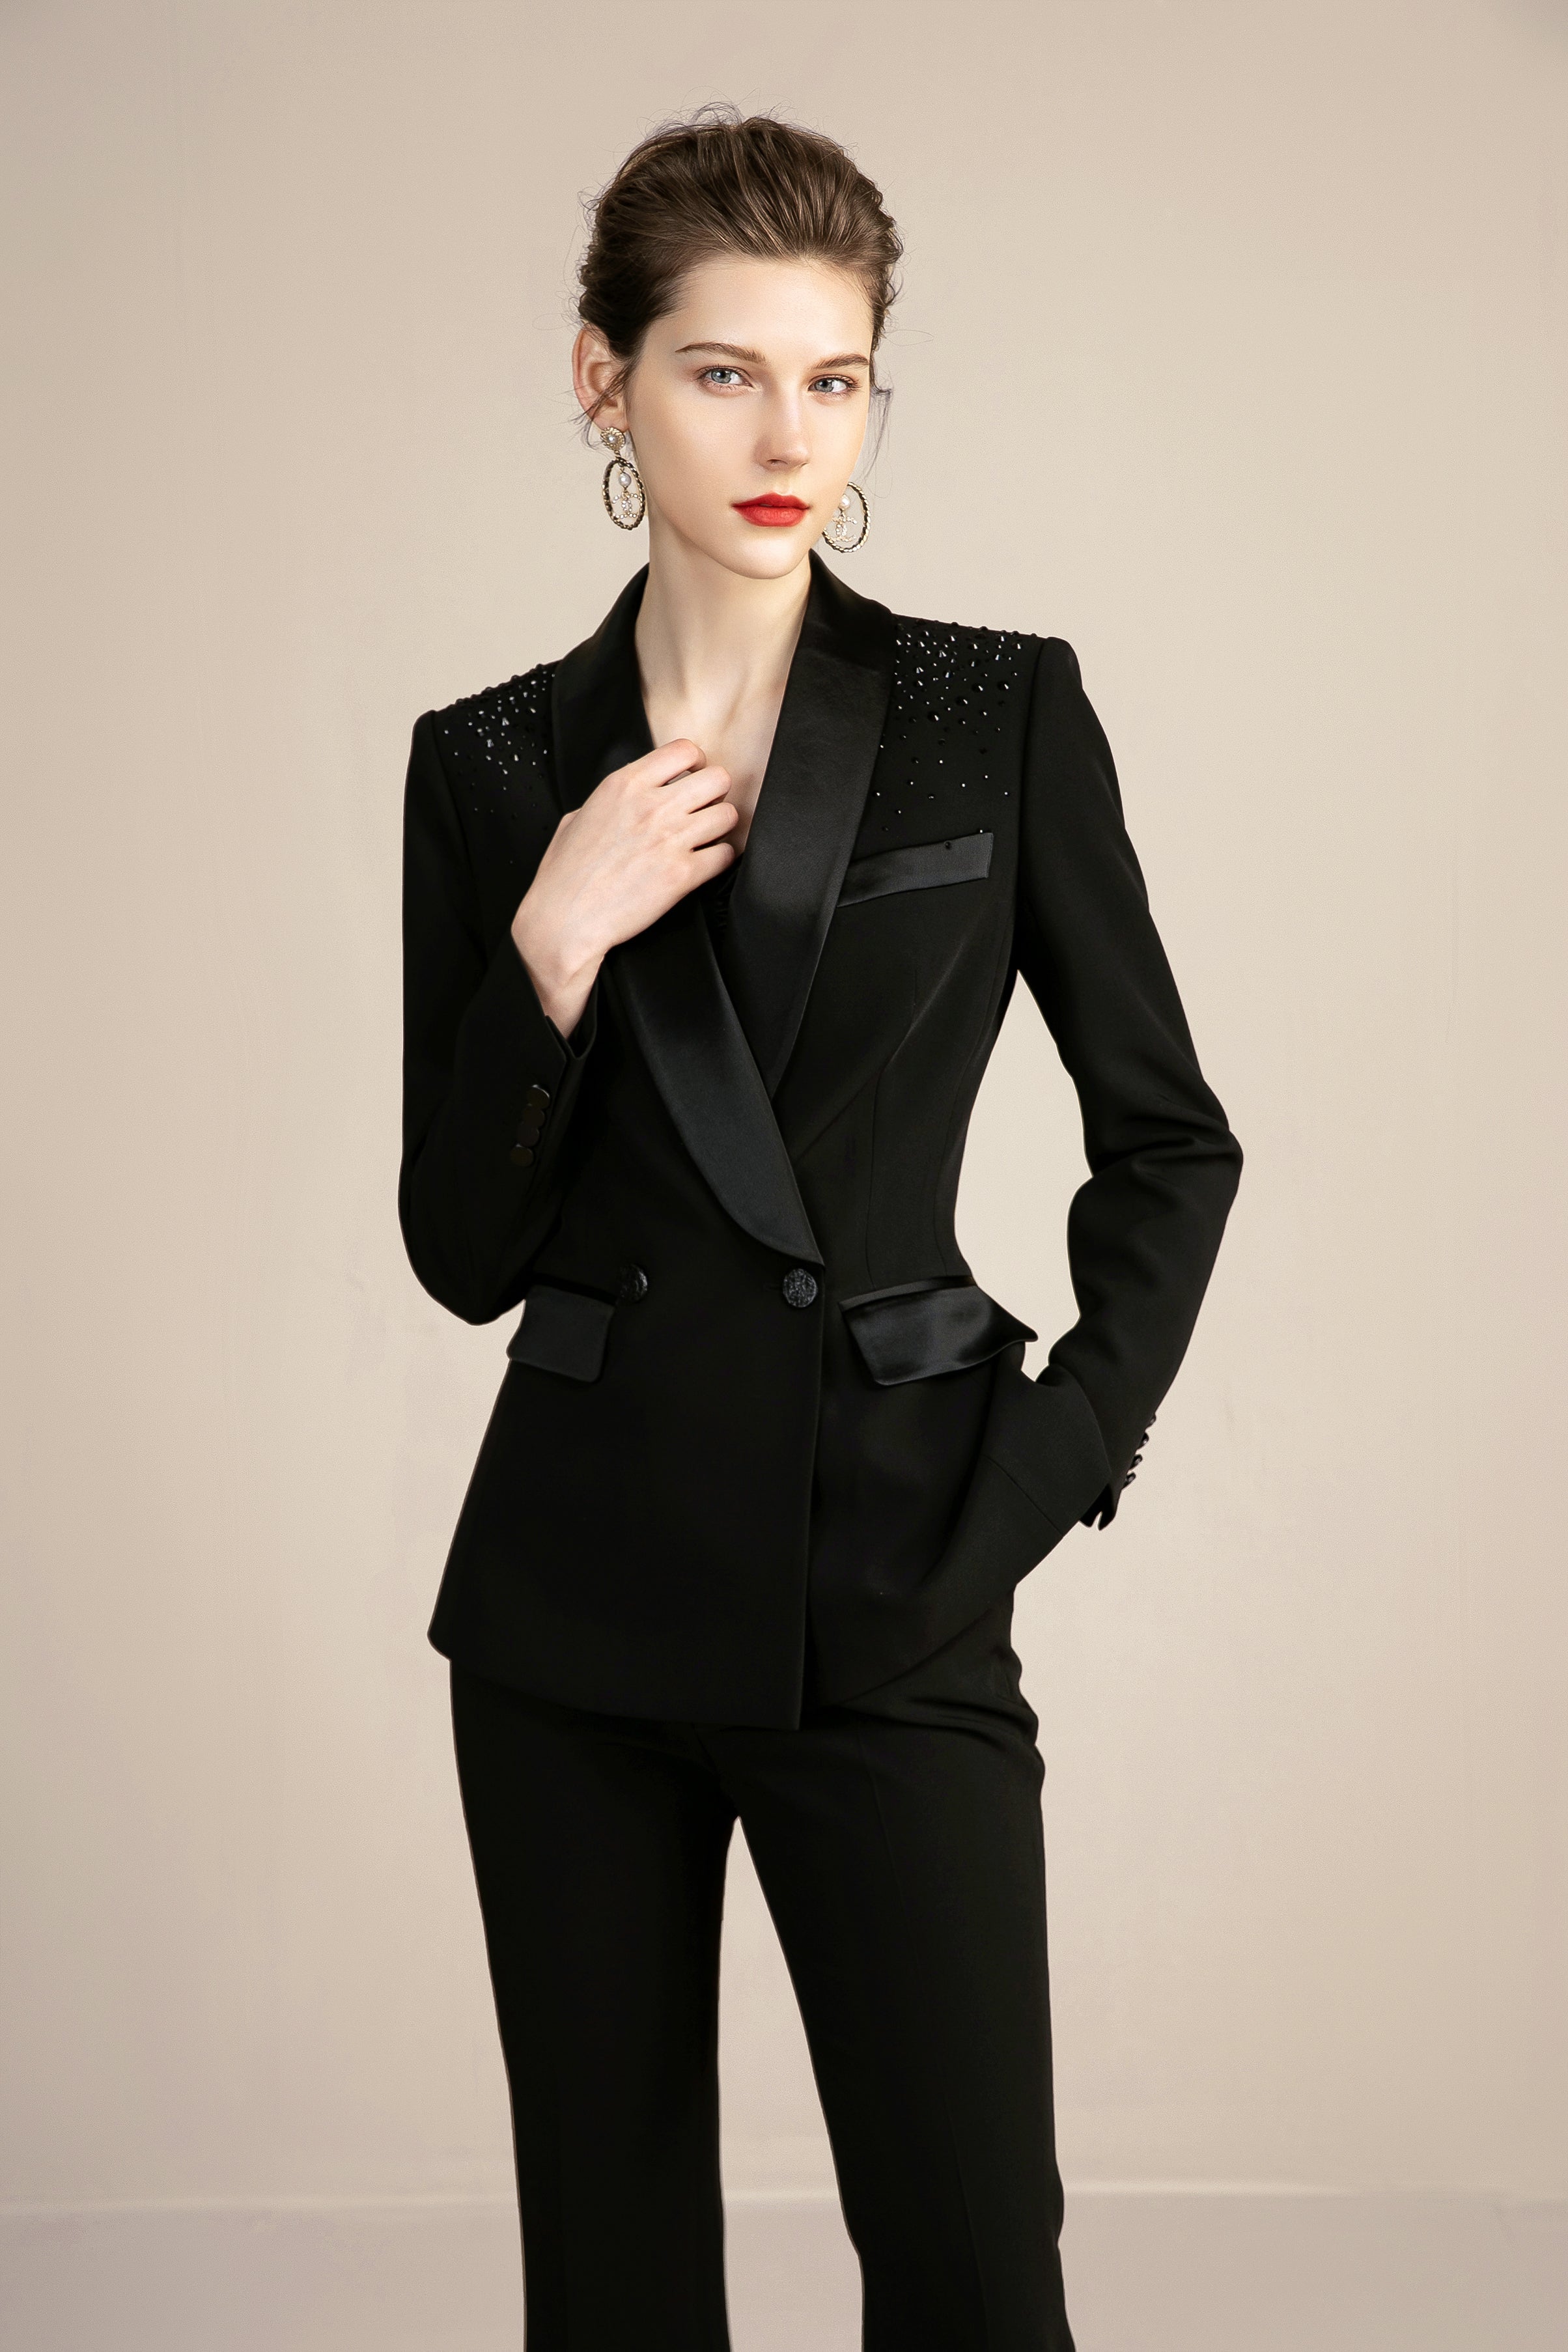 Elegant Black Formal Suits for Women